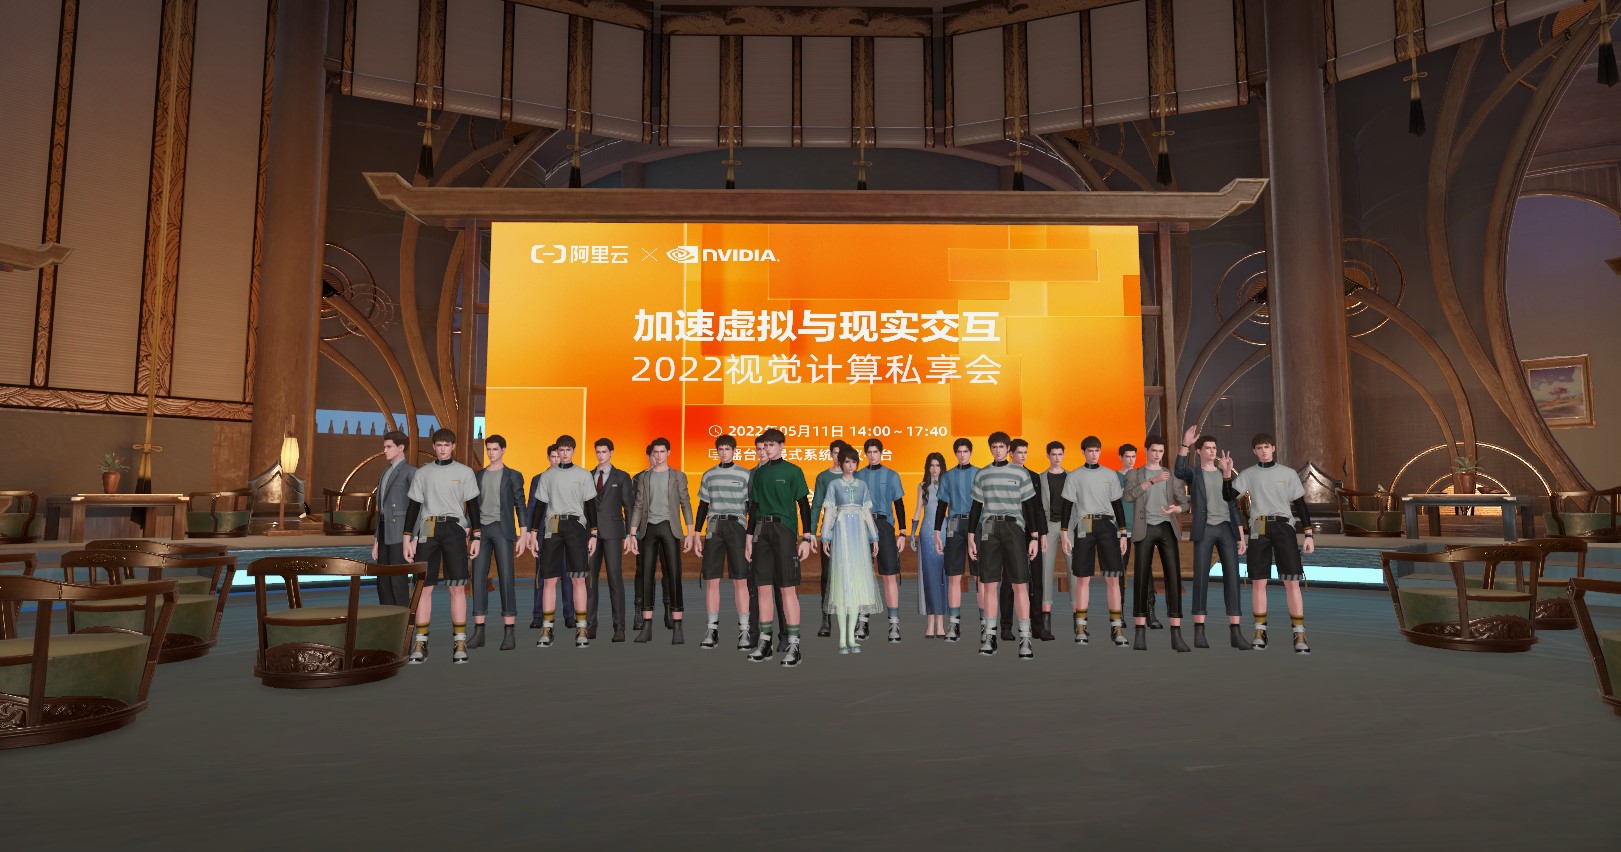 图片展示了一群穿着类似制服的虚拟角色站在一个现代风格室内环境中，背景是一个带有文字的大屏幕。